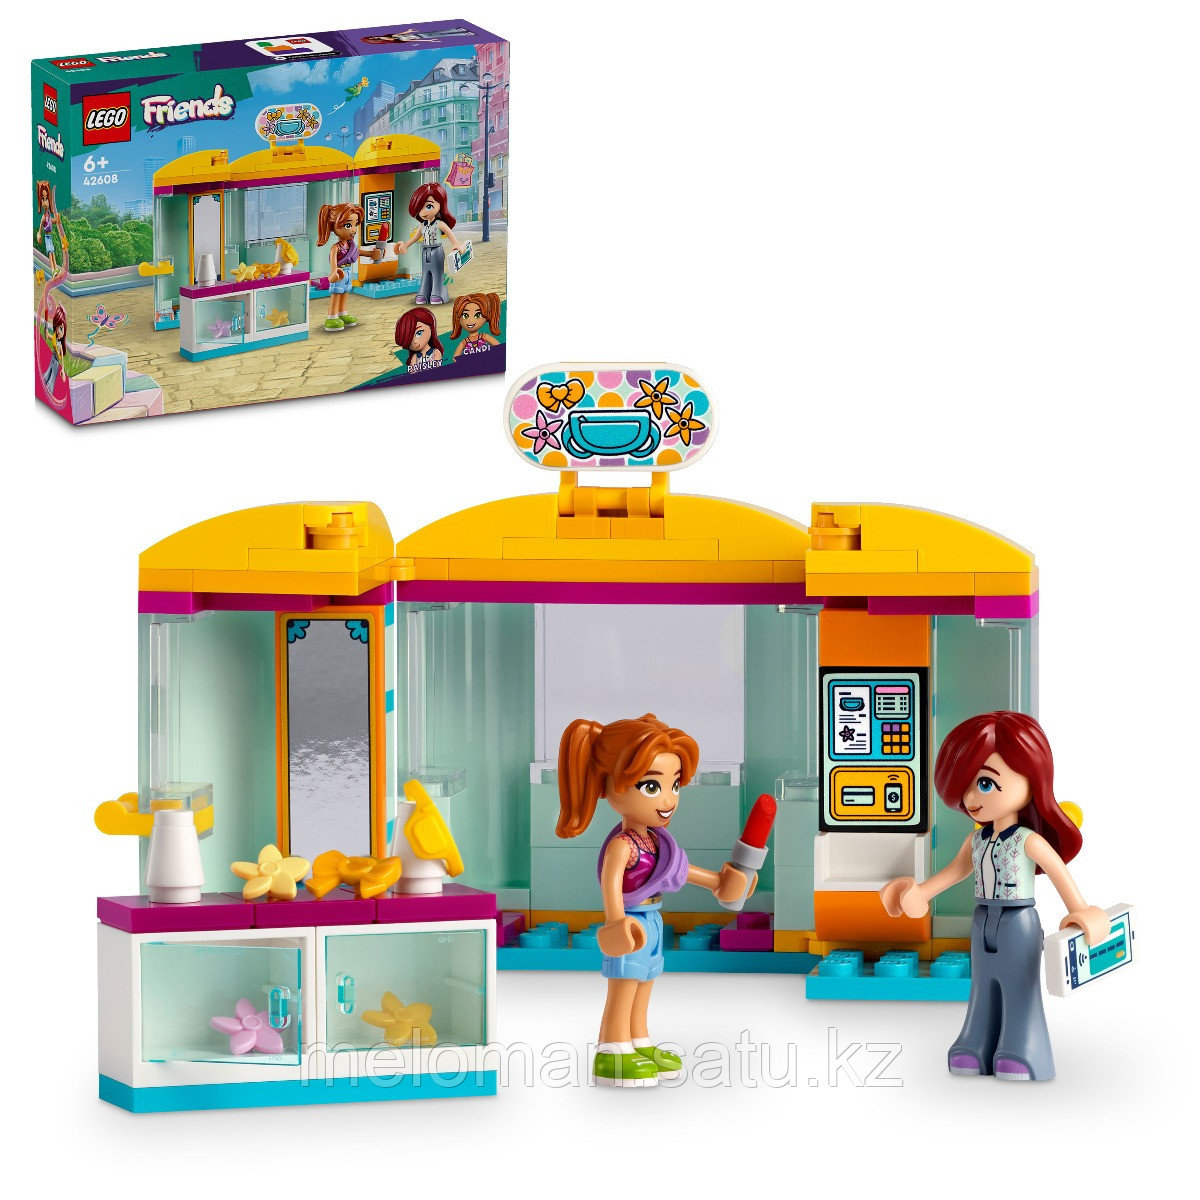 LEGO: Миниатюрный магазин аксессуаров Friends 42608